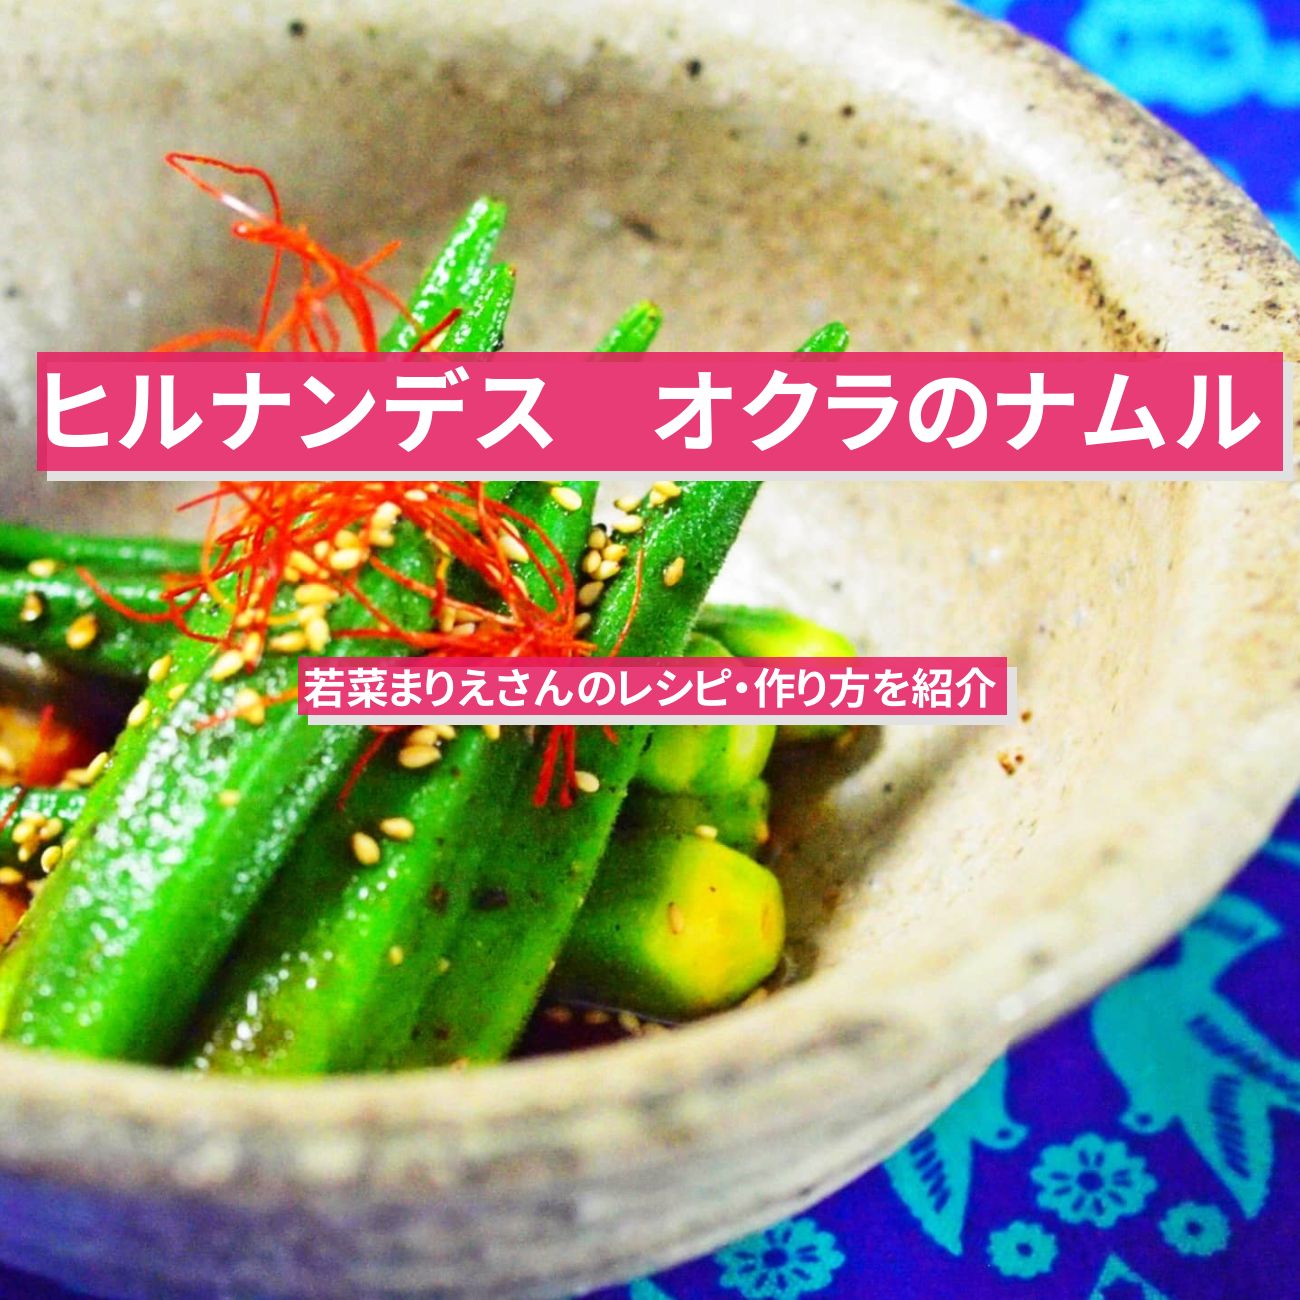 【ヒルナンデス】『オクラのナムル』若菜まりえさんのレシピ・作り方を紹介